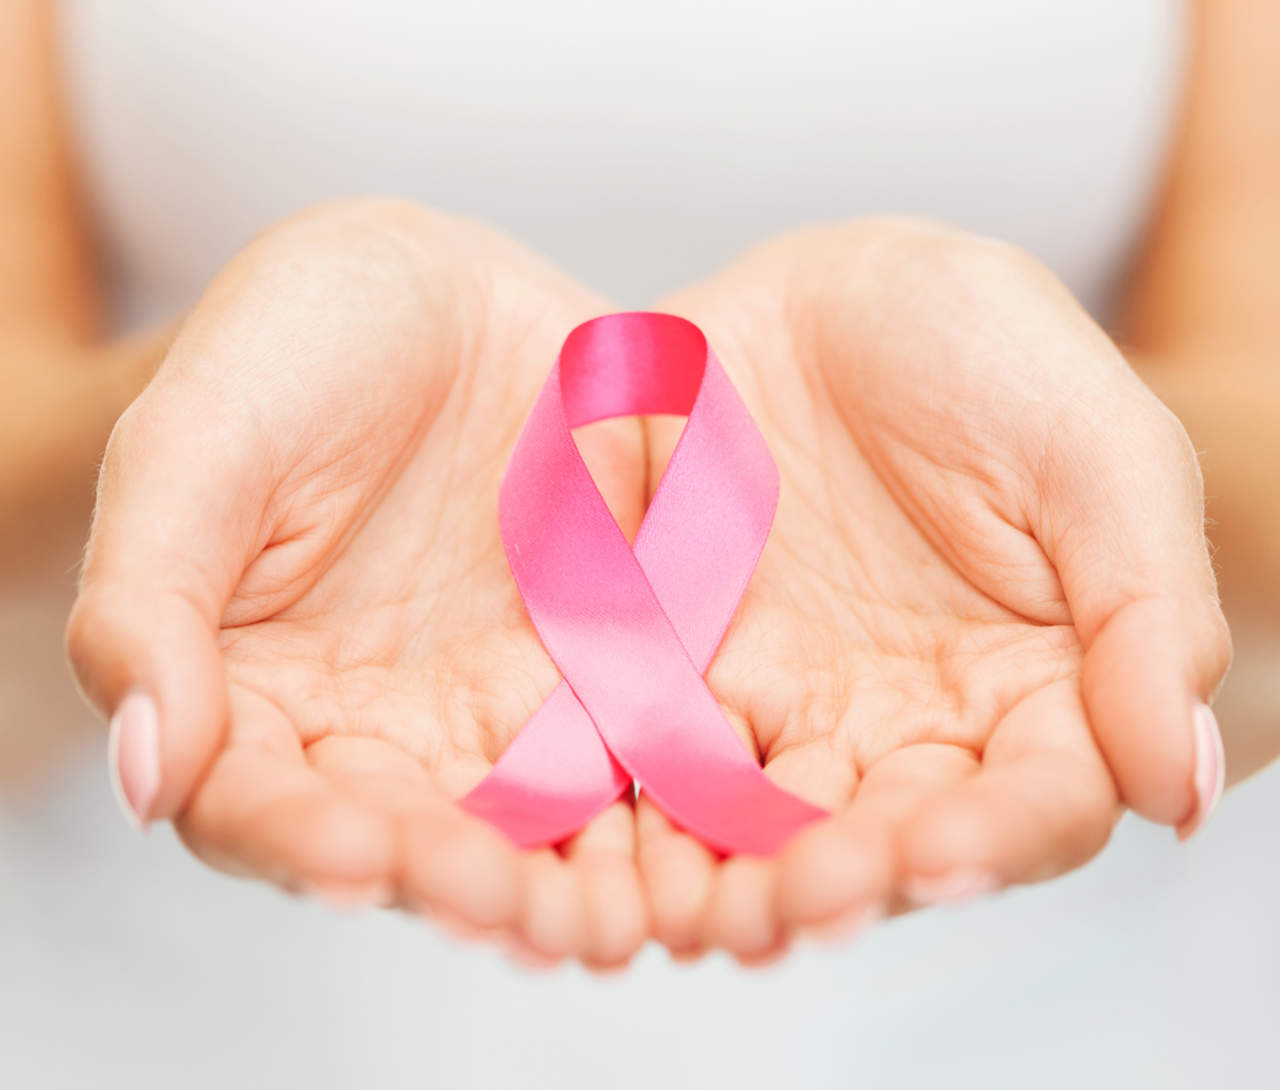 Es el símbolo internacional usado por personas, compañías y organizaciones que se comprometen a crear conciencia sobre el cáncer de mama y mostrar apoyo moral a las mujeres con esta enfermedad. (ARCHIVO)